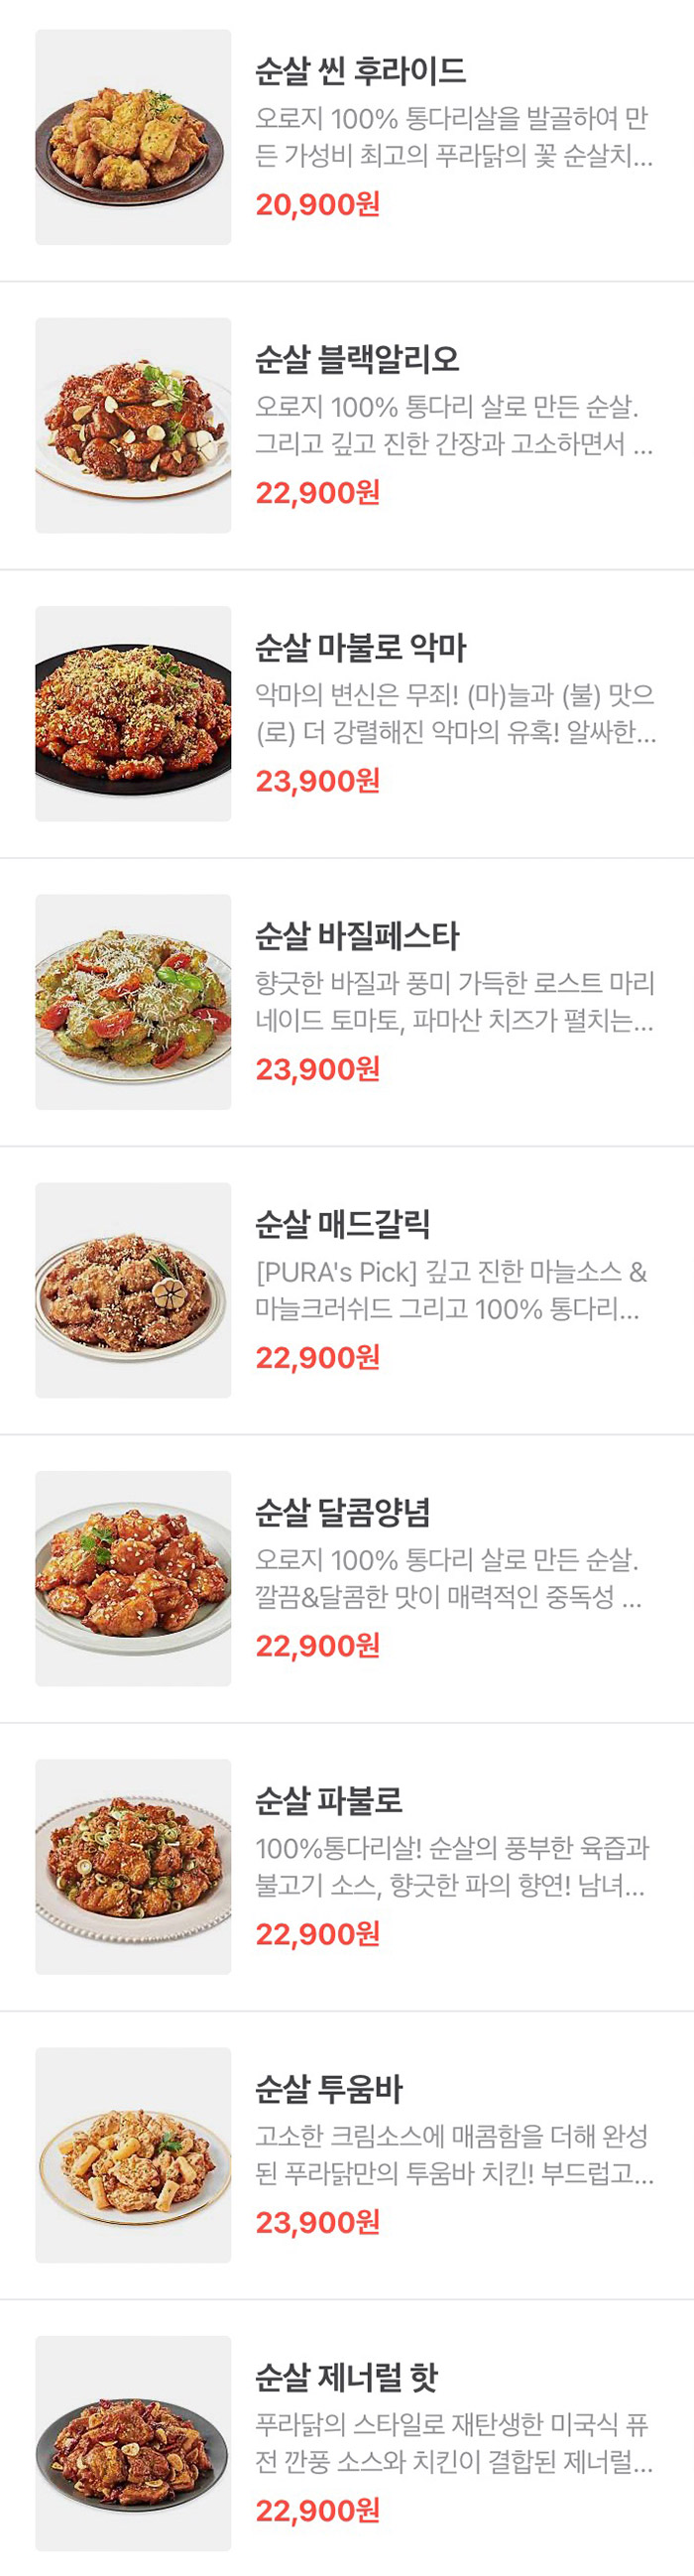 푸라닭-치킨-순살-메뉴-가격